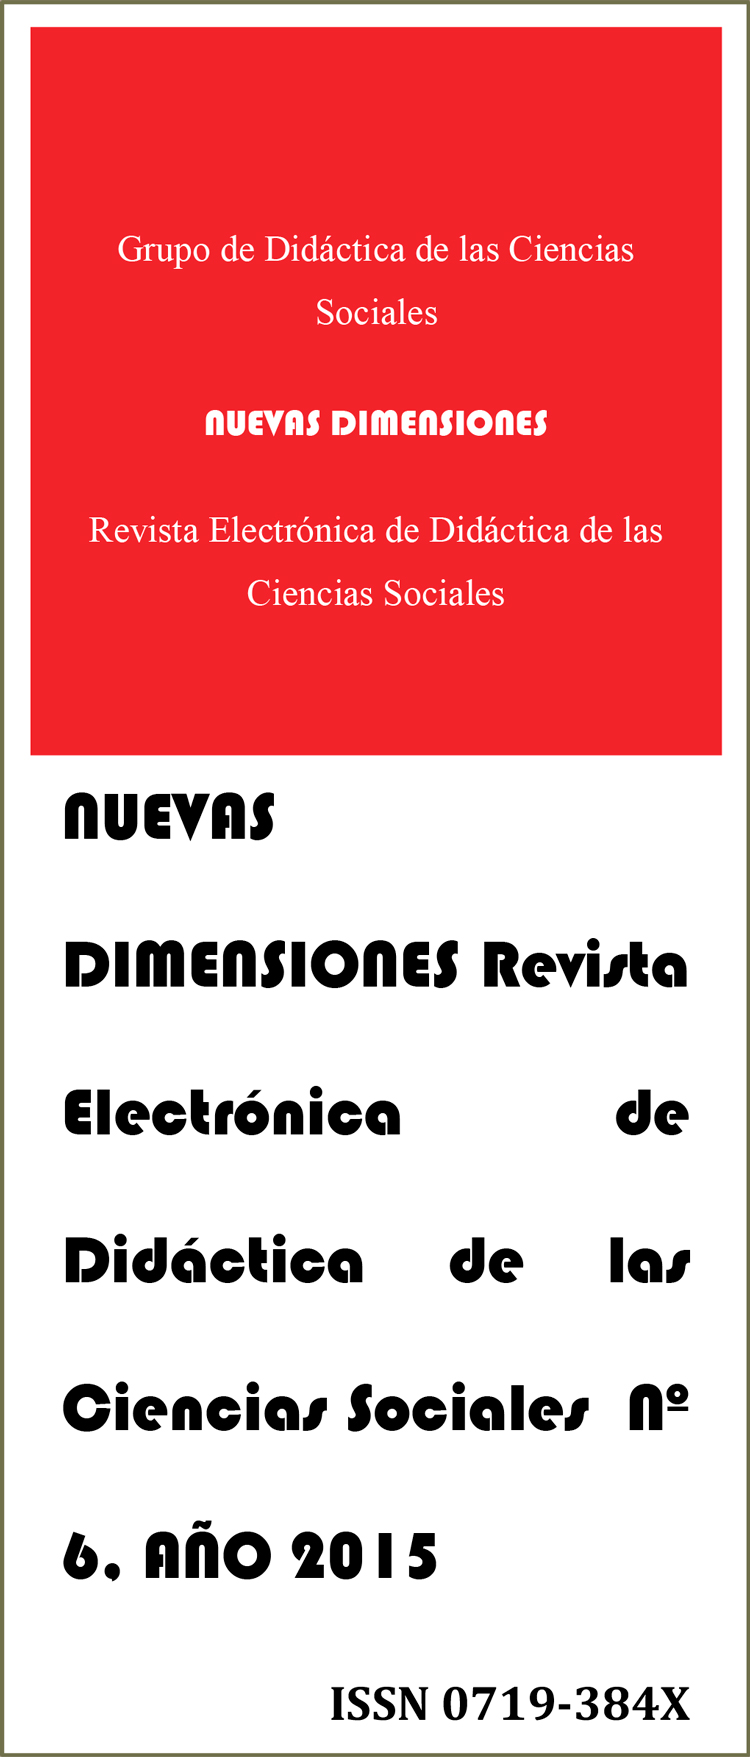 NUEVAS DIMENSIONES Revista Electrónica de Didáctica de las Ciencias Sociales